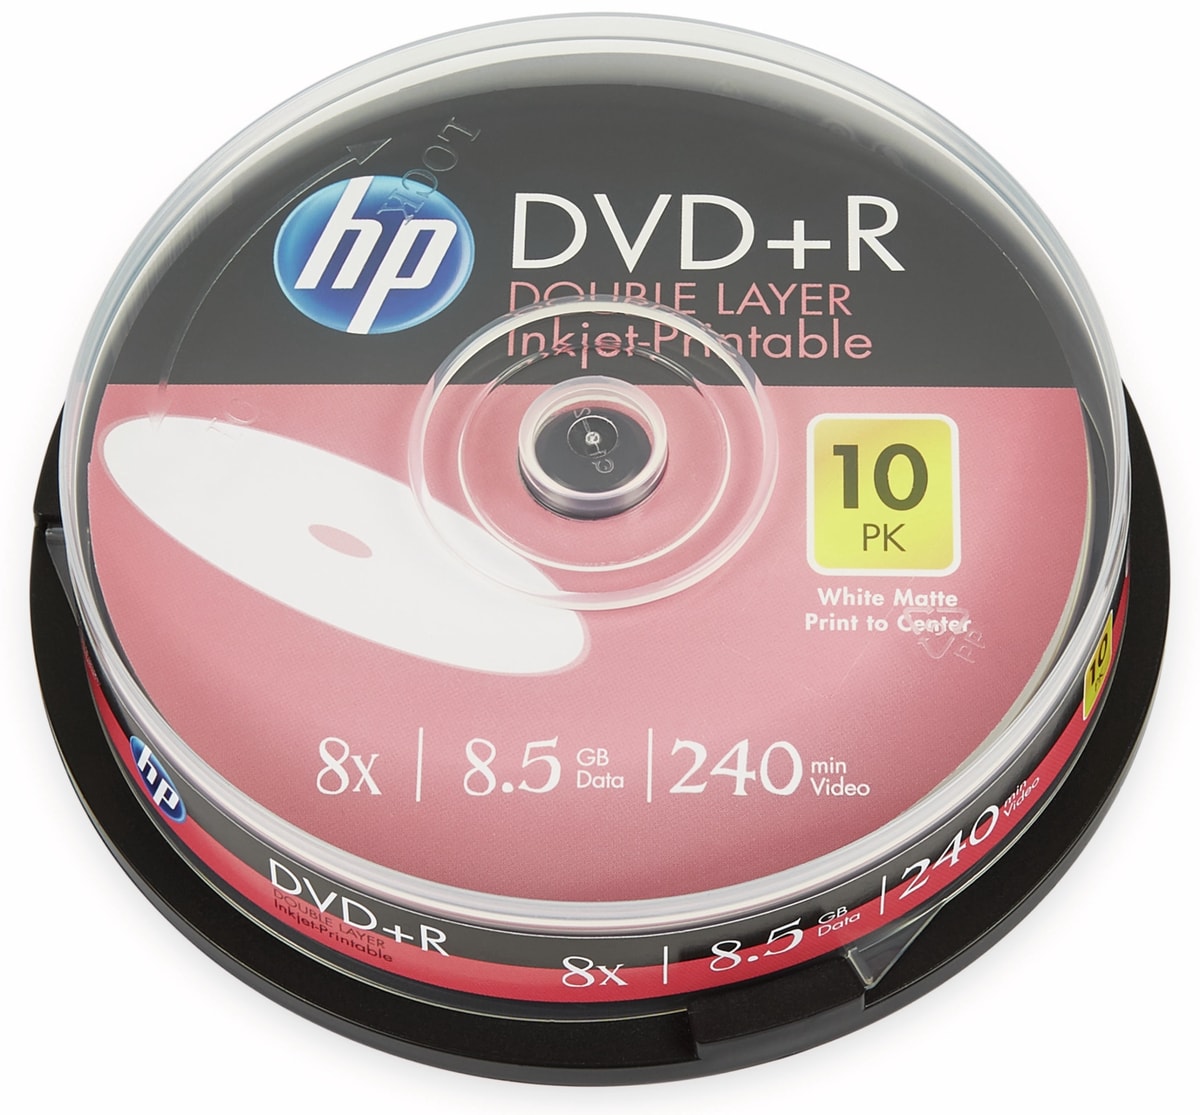 HP DVD+R DL 8,5GB, 240Min, 8x, Cakebox, 10 CDs, bedruckbar von HP